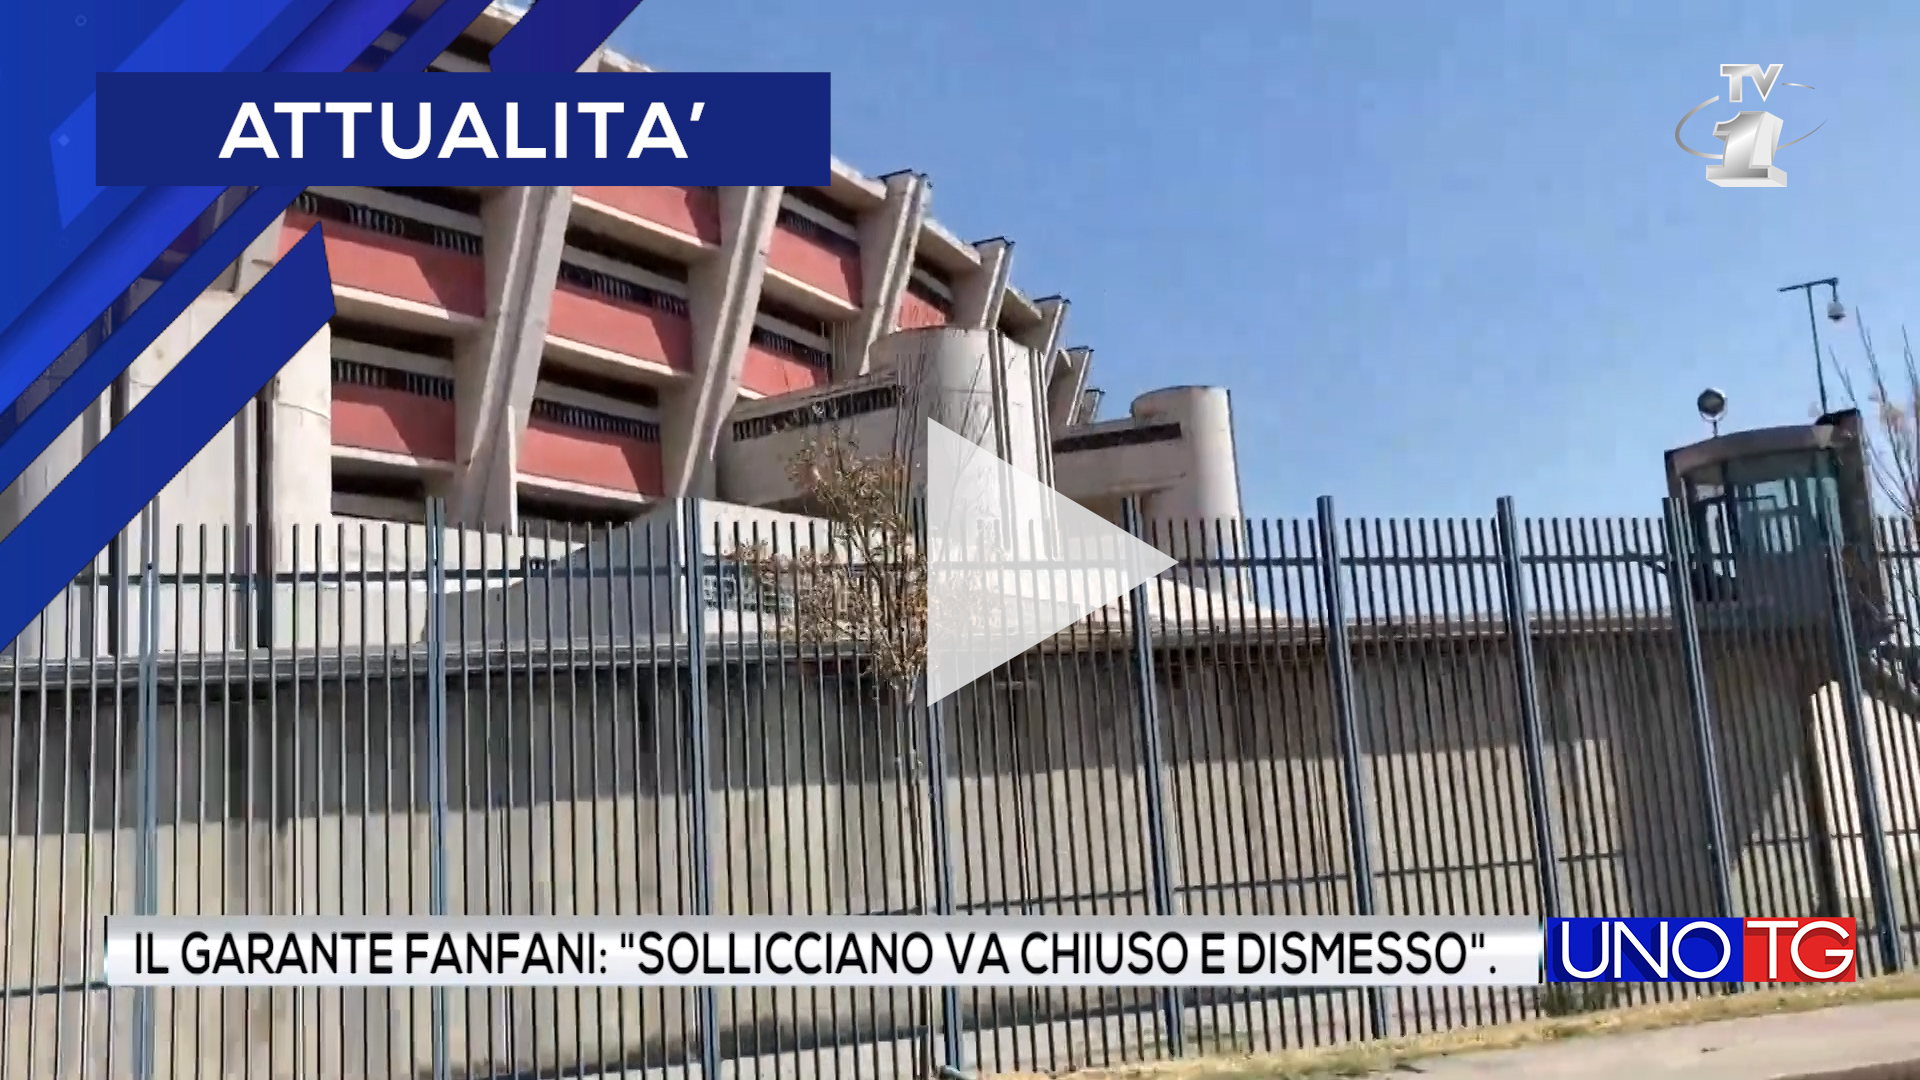 Il garante Fanfani: "Il Carcere di Sollicciano va chiuso e dismesso"